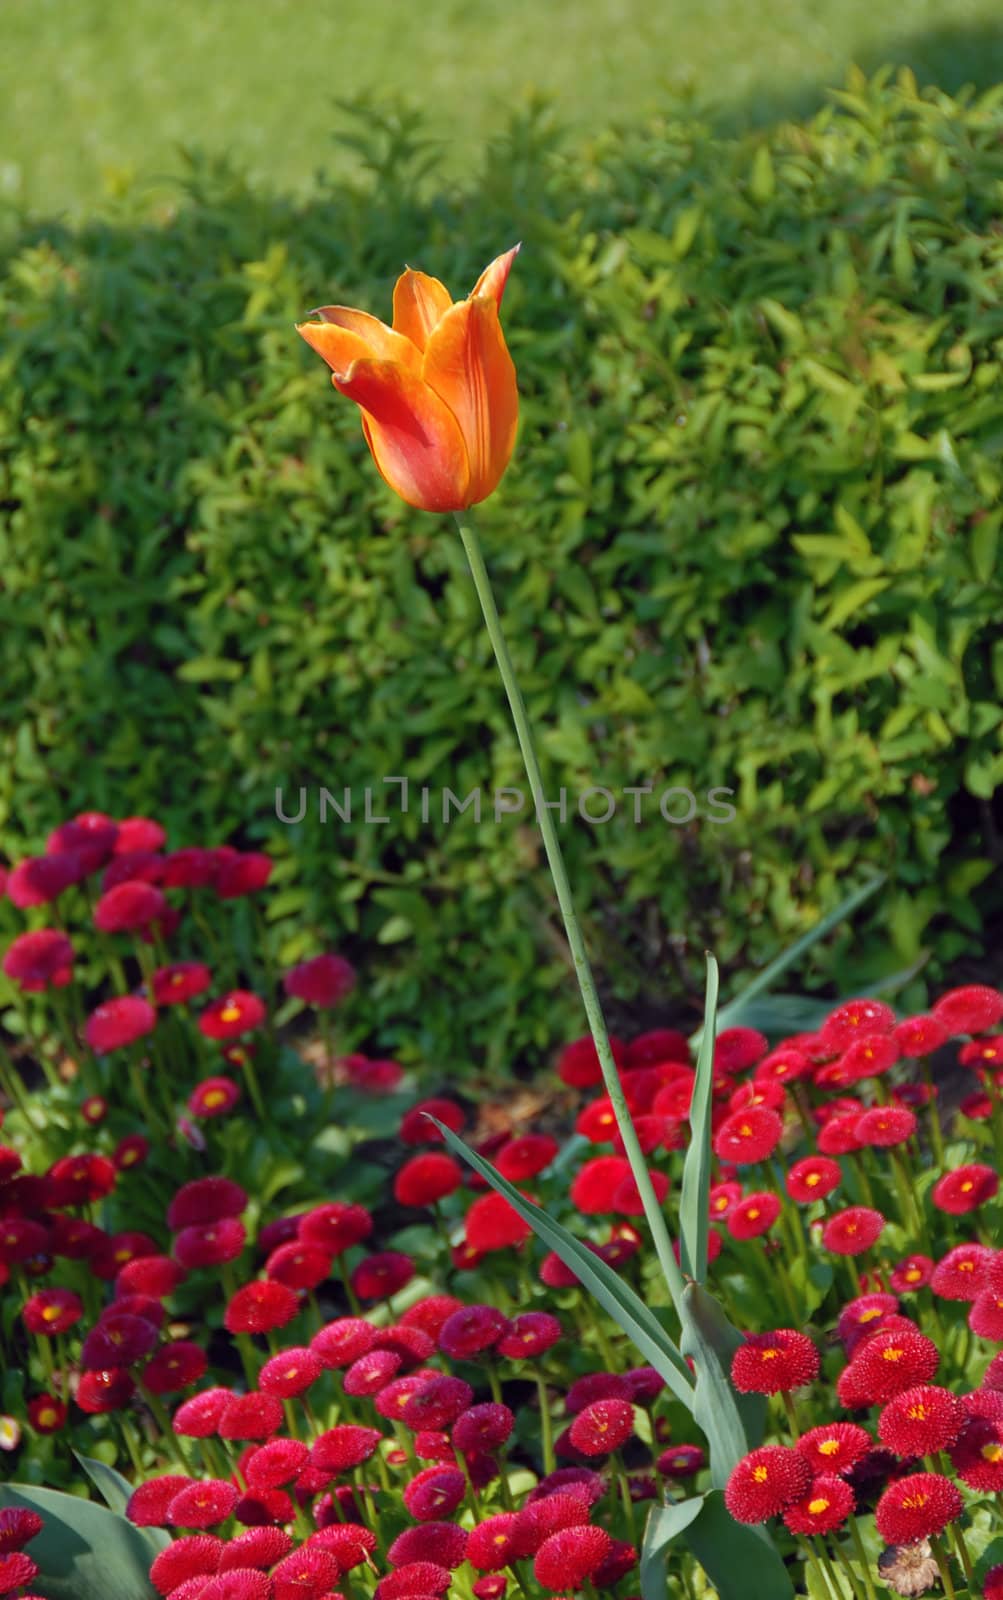 orange tulip blooming on flowerbed outdoor over green